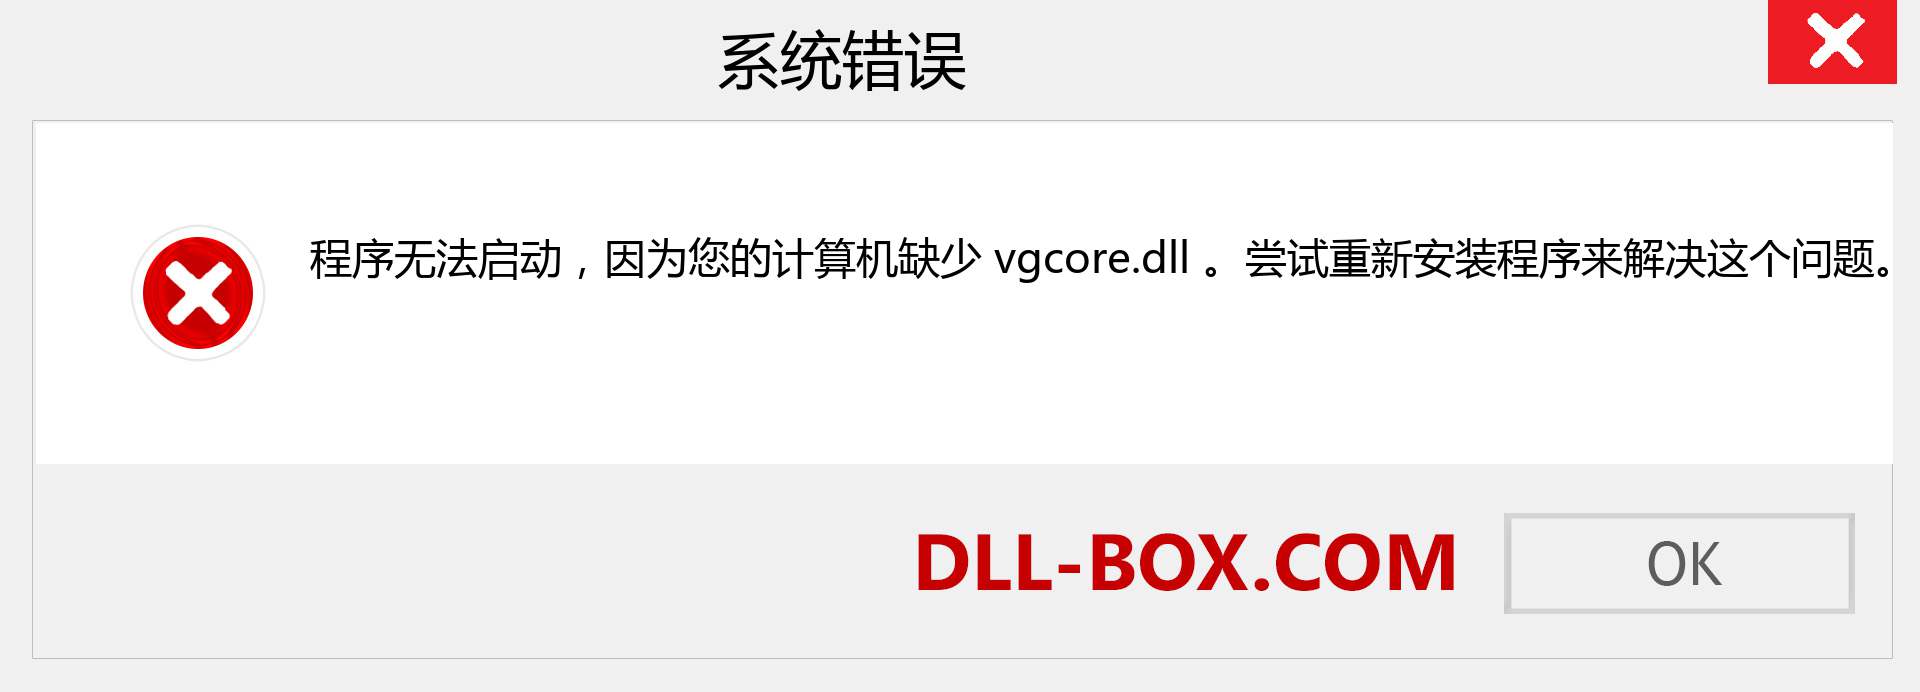 vgcore.dll 文件丢失？。 适用于 Windows 7、8、10 的下载 - 修复 Windows、照片、图像上的 vgcore dll 丢失错误